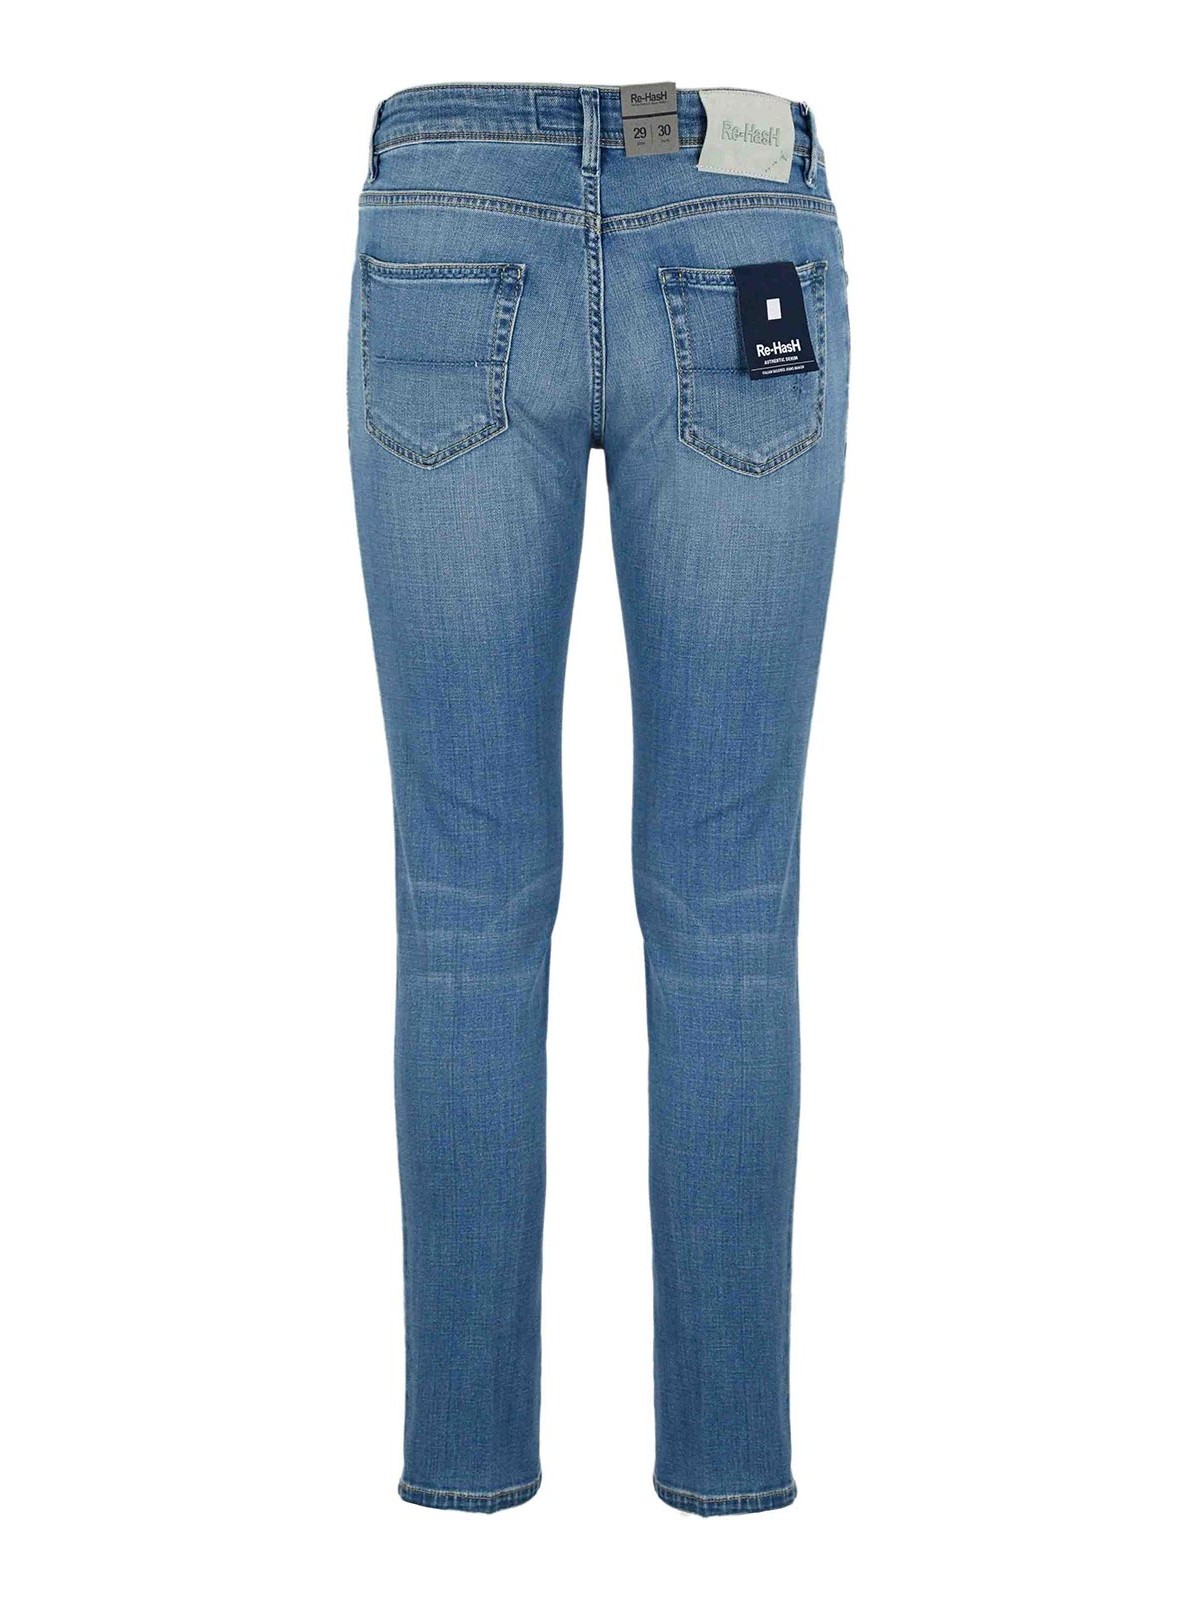 Shop Re-hash Blue Rubens Jeans